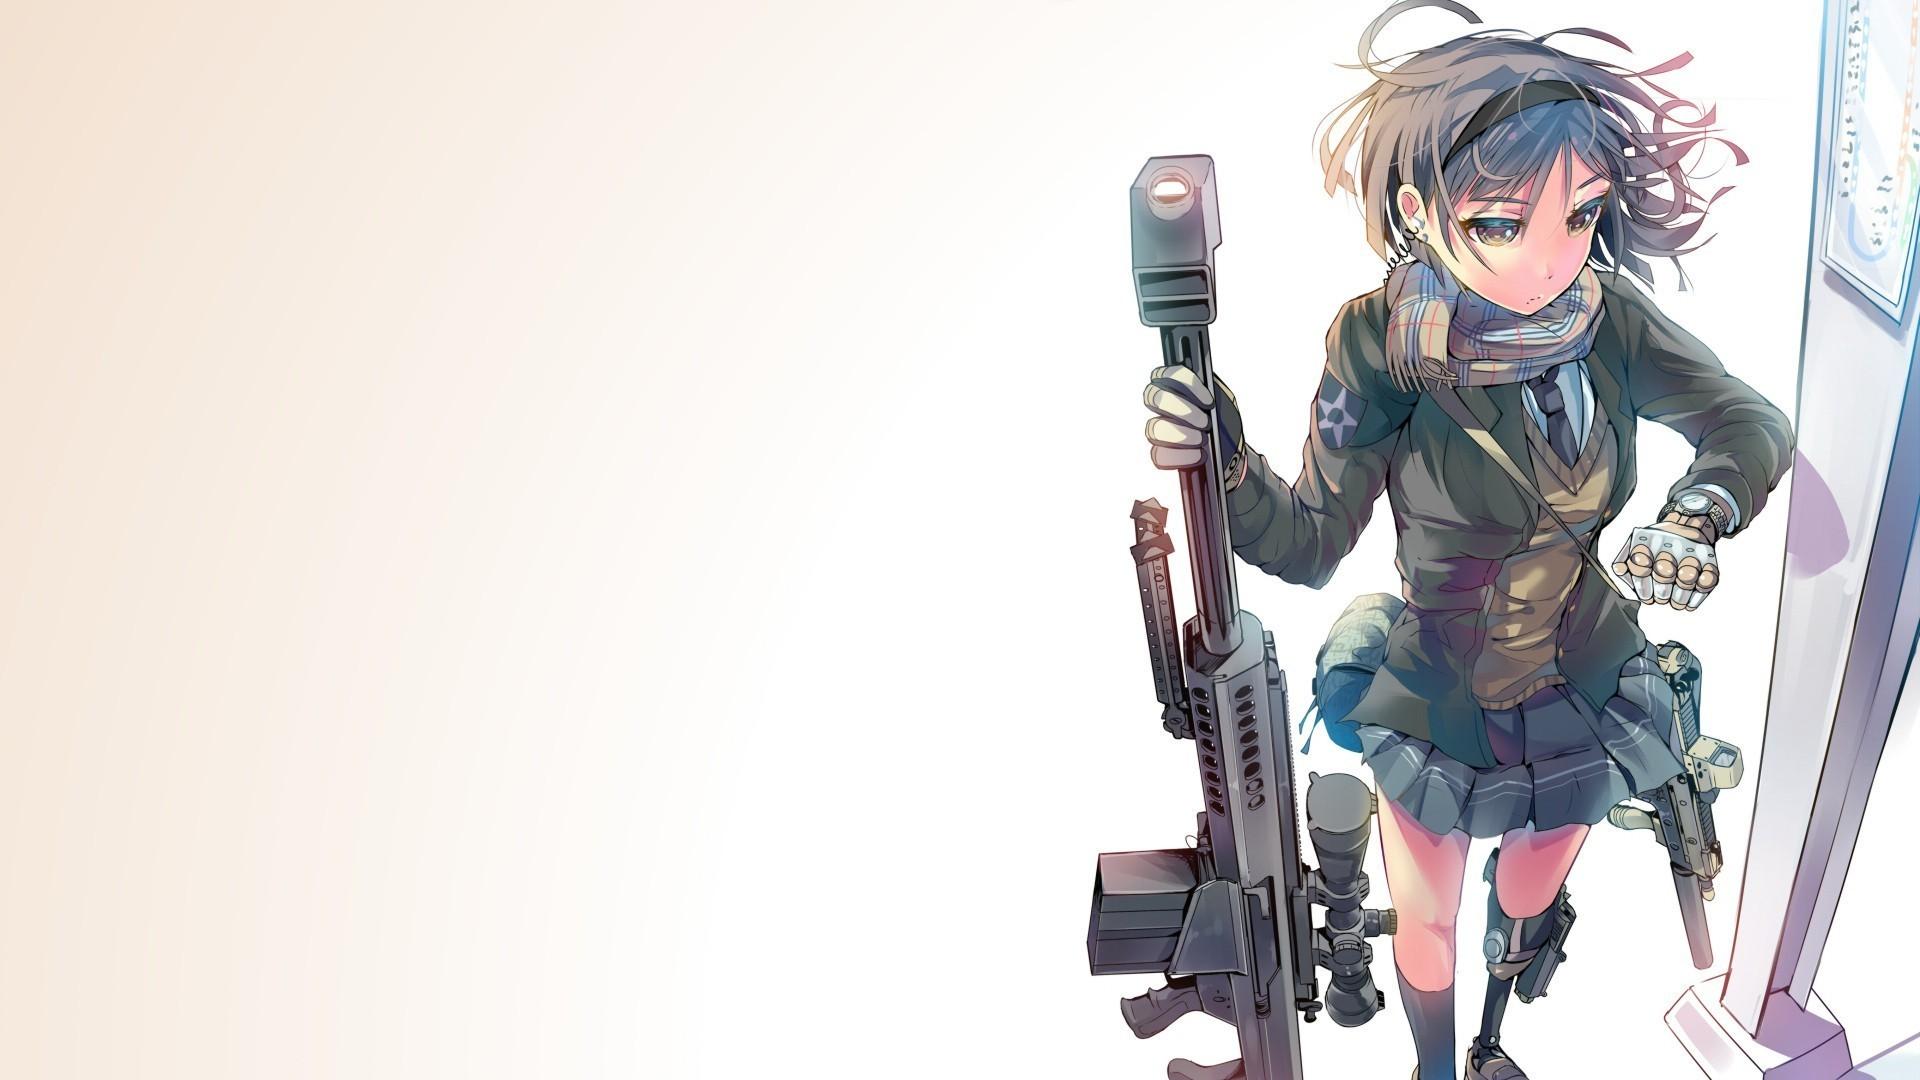 Anime Sniper Wallpaper